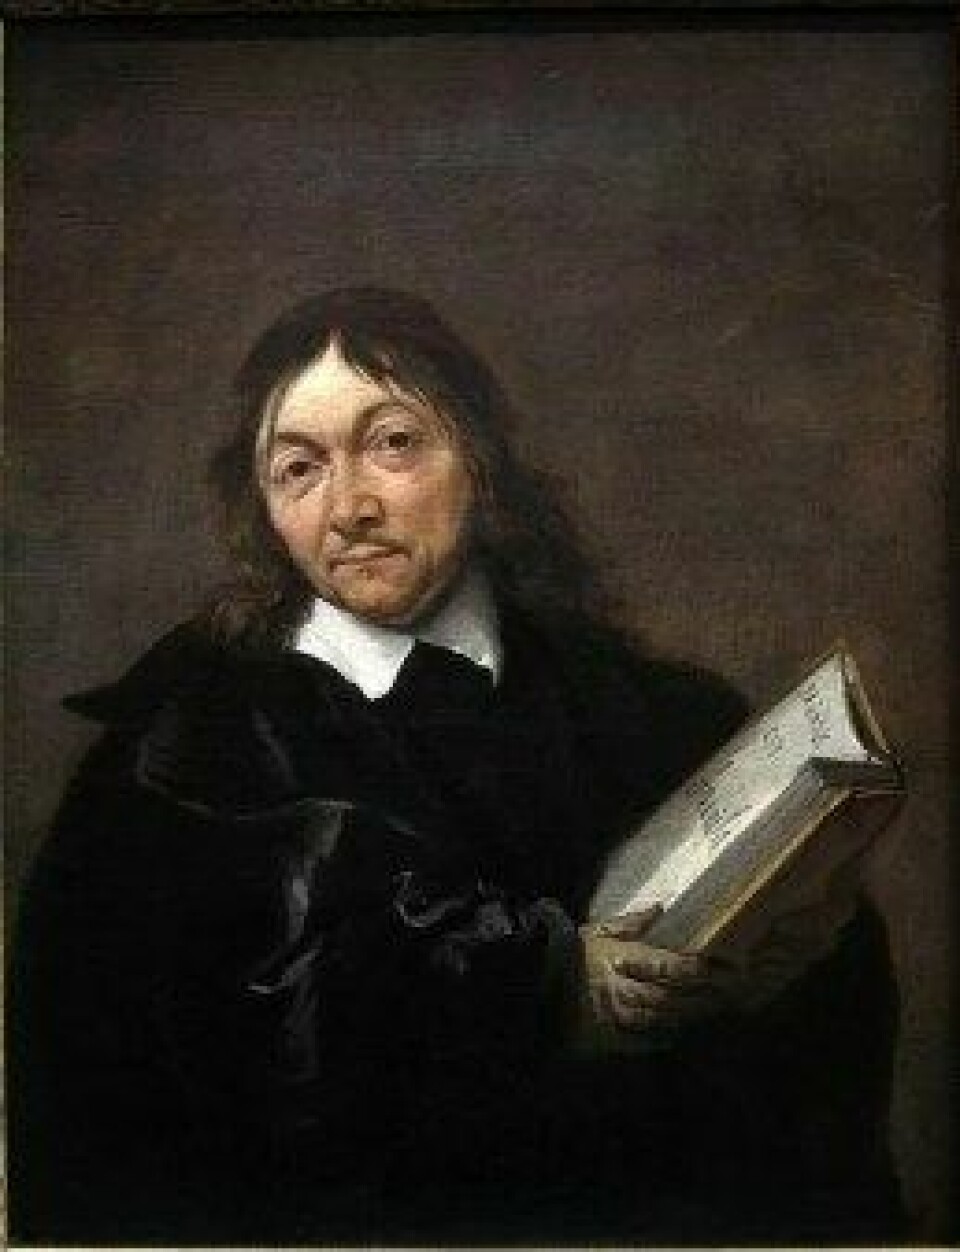 Portrett av René Descartes, måla av Jan Baptist Weenix. (Kjelde: Wikimedia Commons)